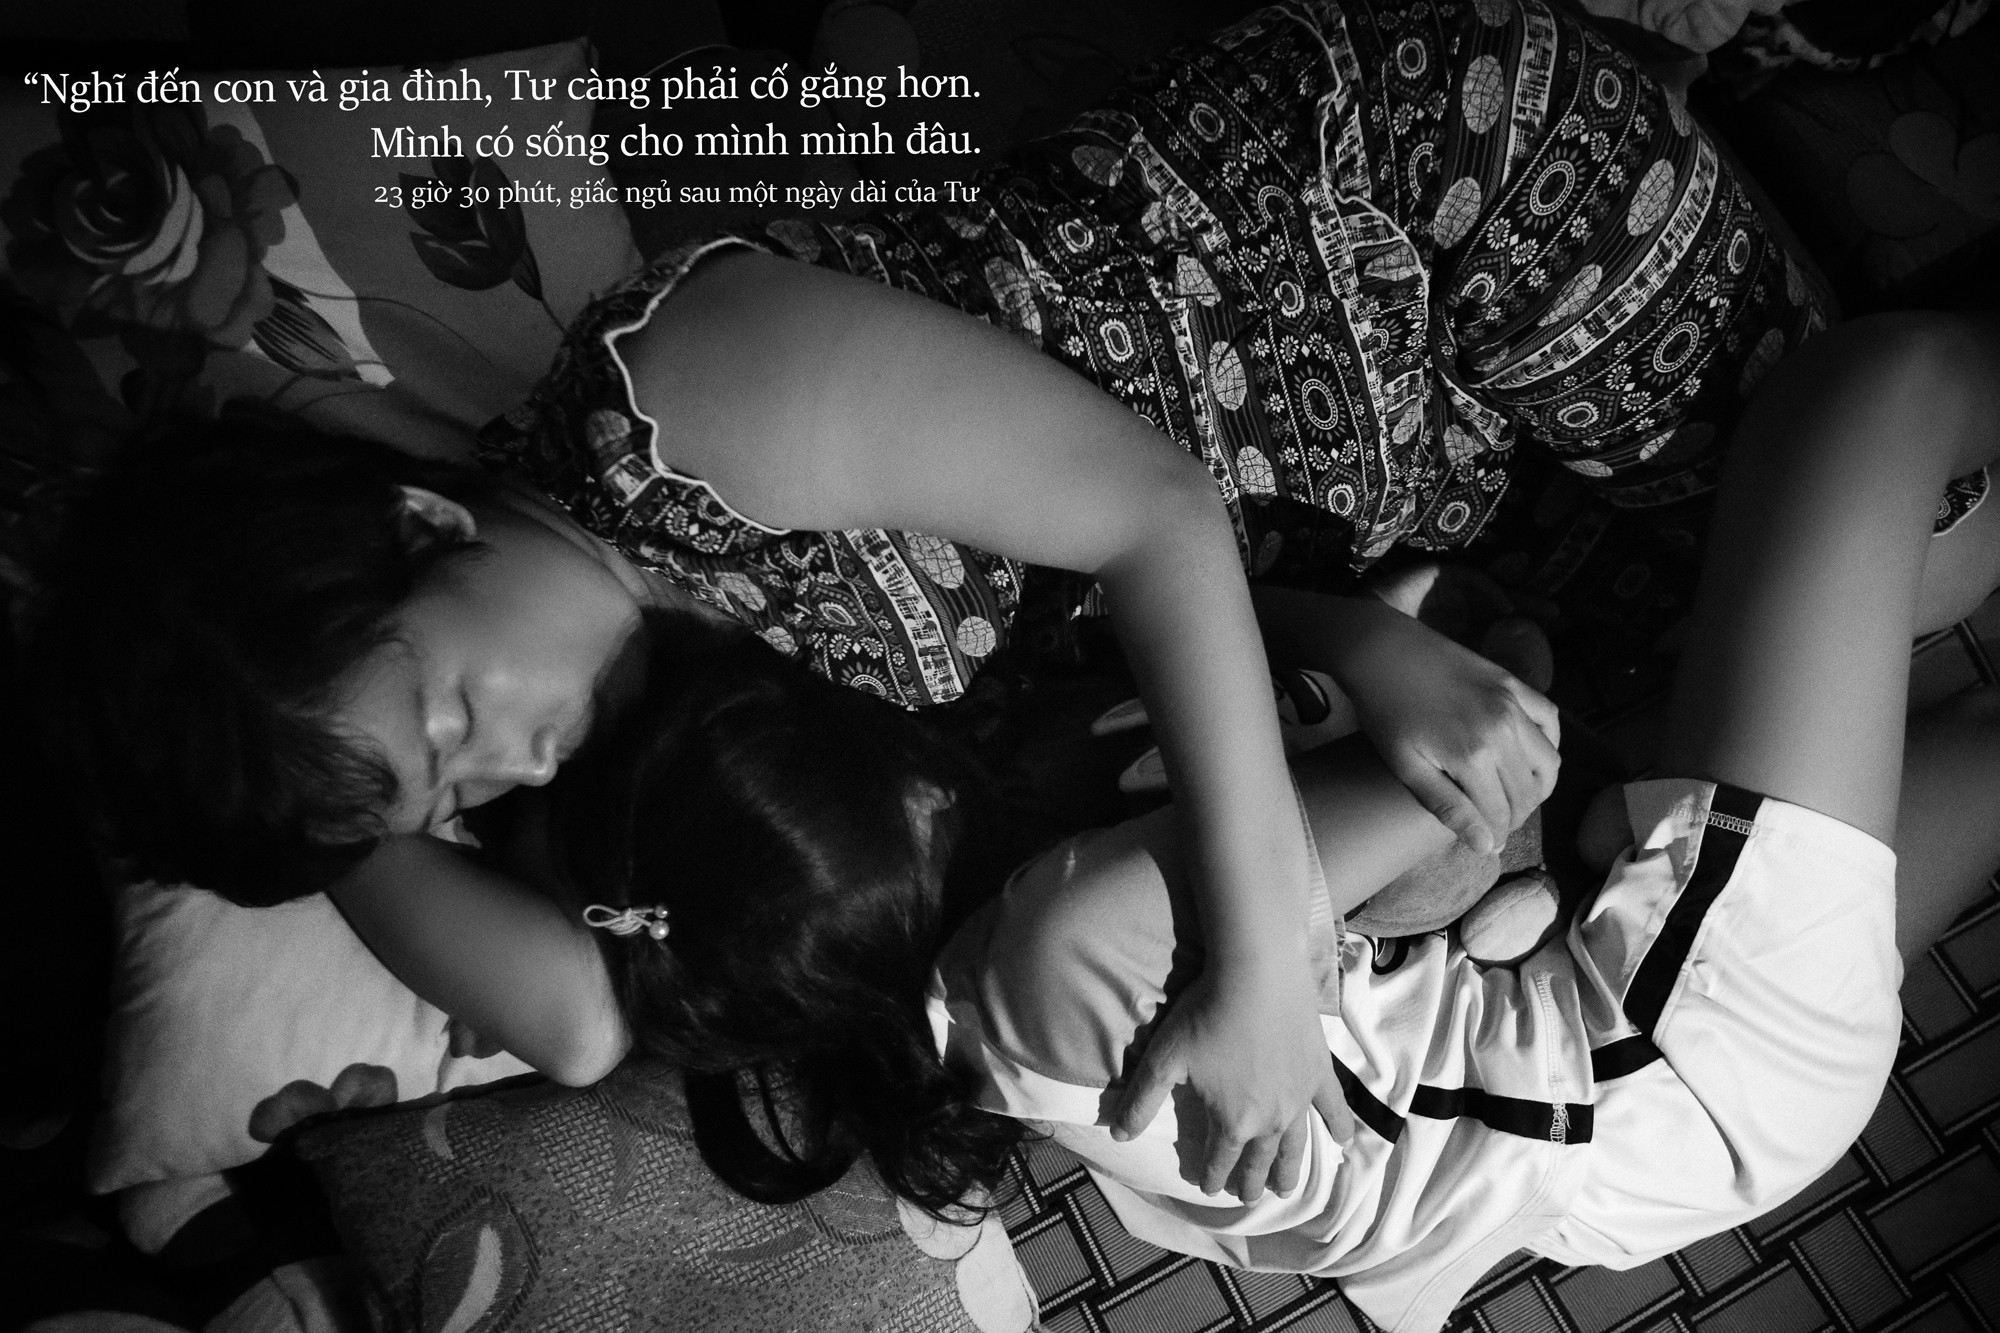 24 giờ của Tư: Bộ ảnh xúc động về người mẹ đơn thân chiến đấu với căn bệnh ung thư cùng cô con gái 12 tuổi - Ảnh 14.